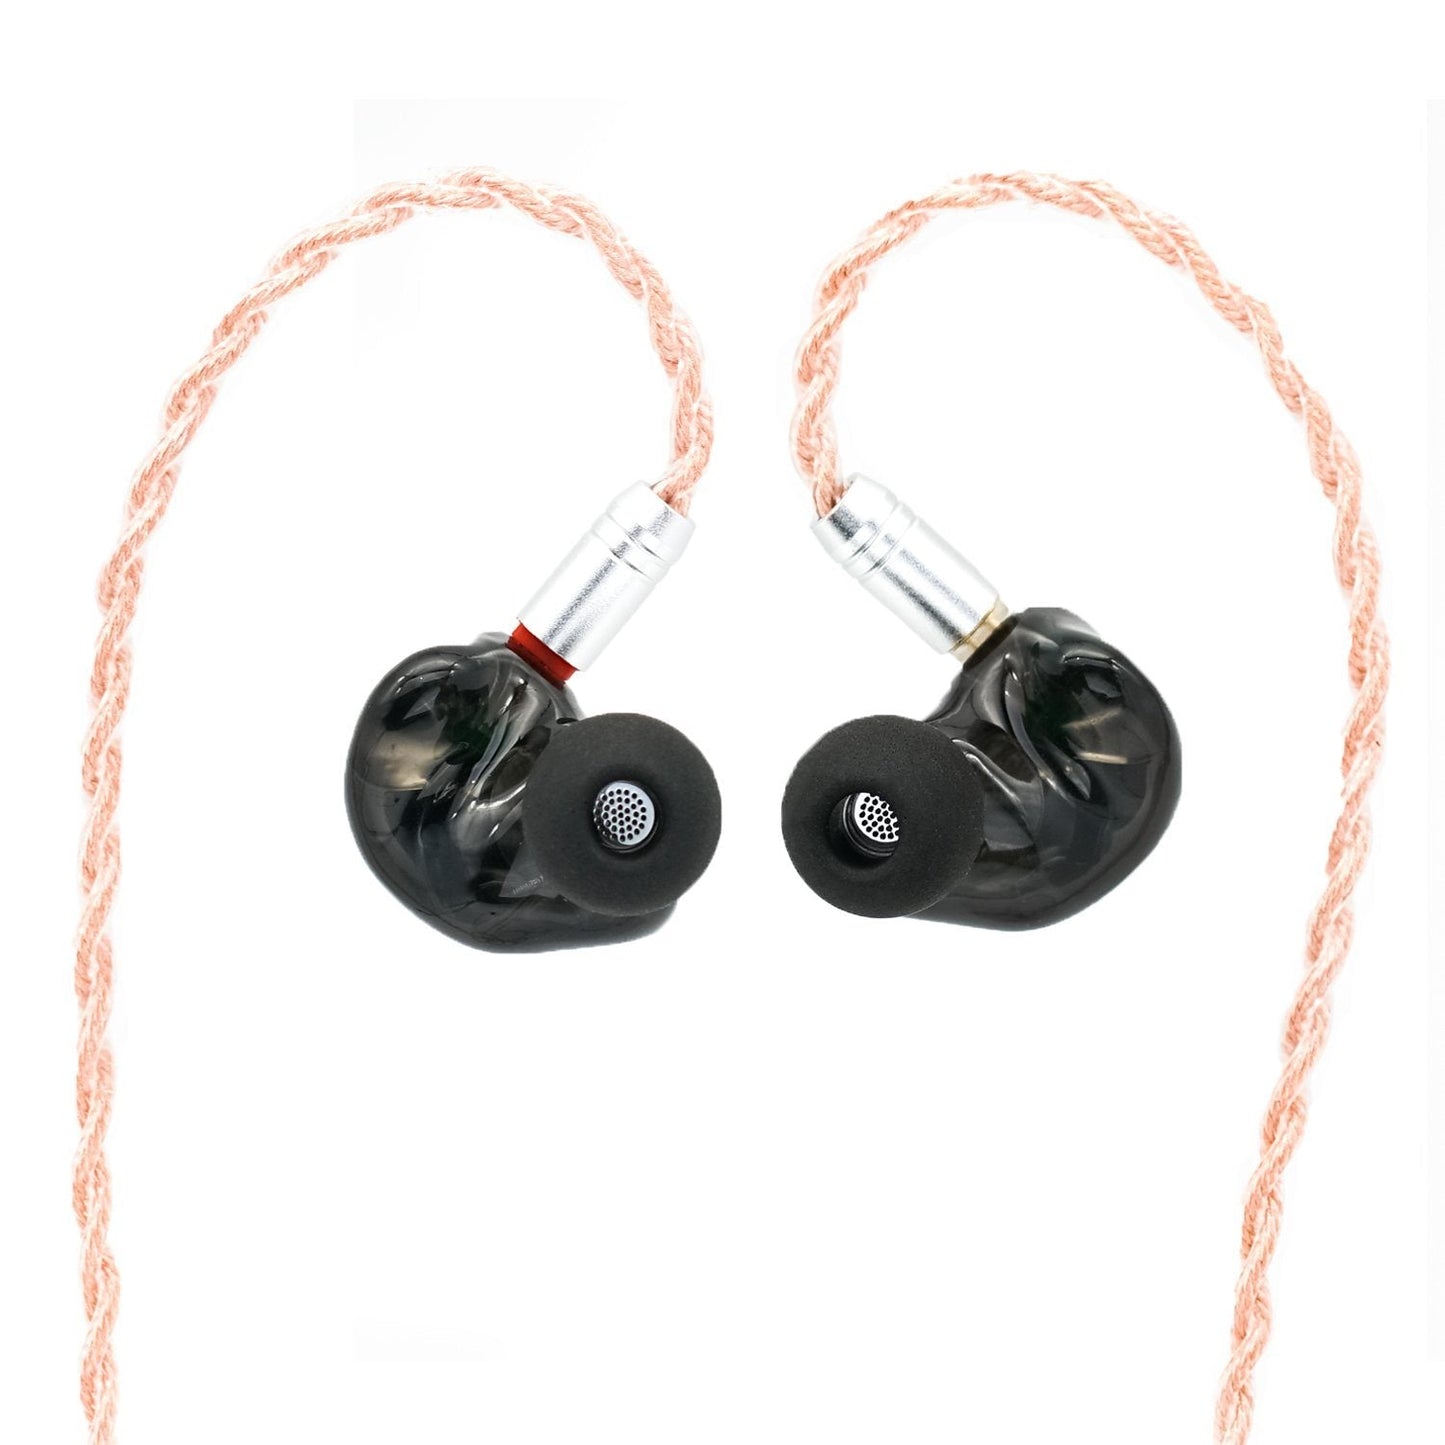 SeeAudio Yume 1DD + 2BA Hybrid In-Ear Earphone